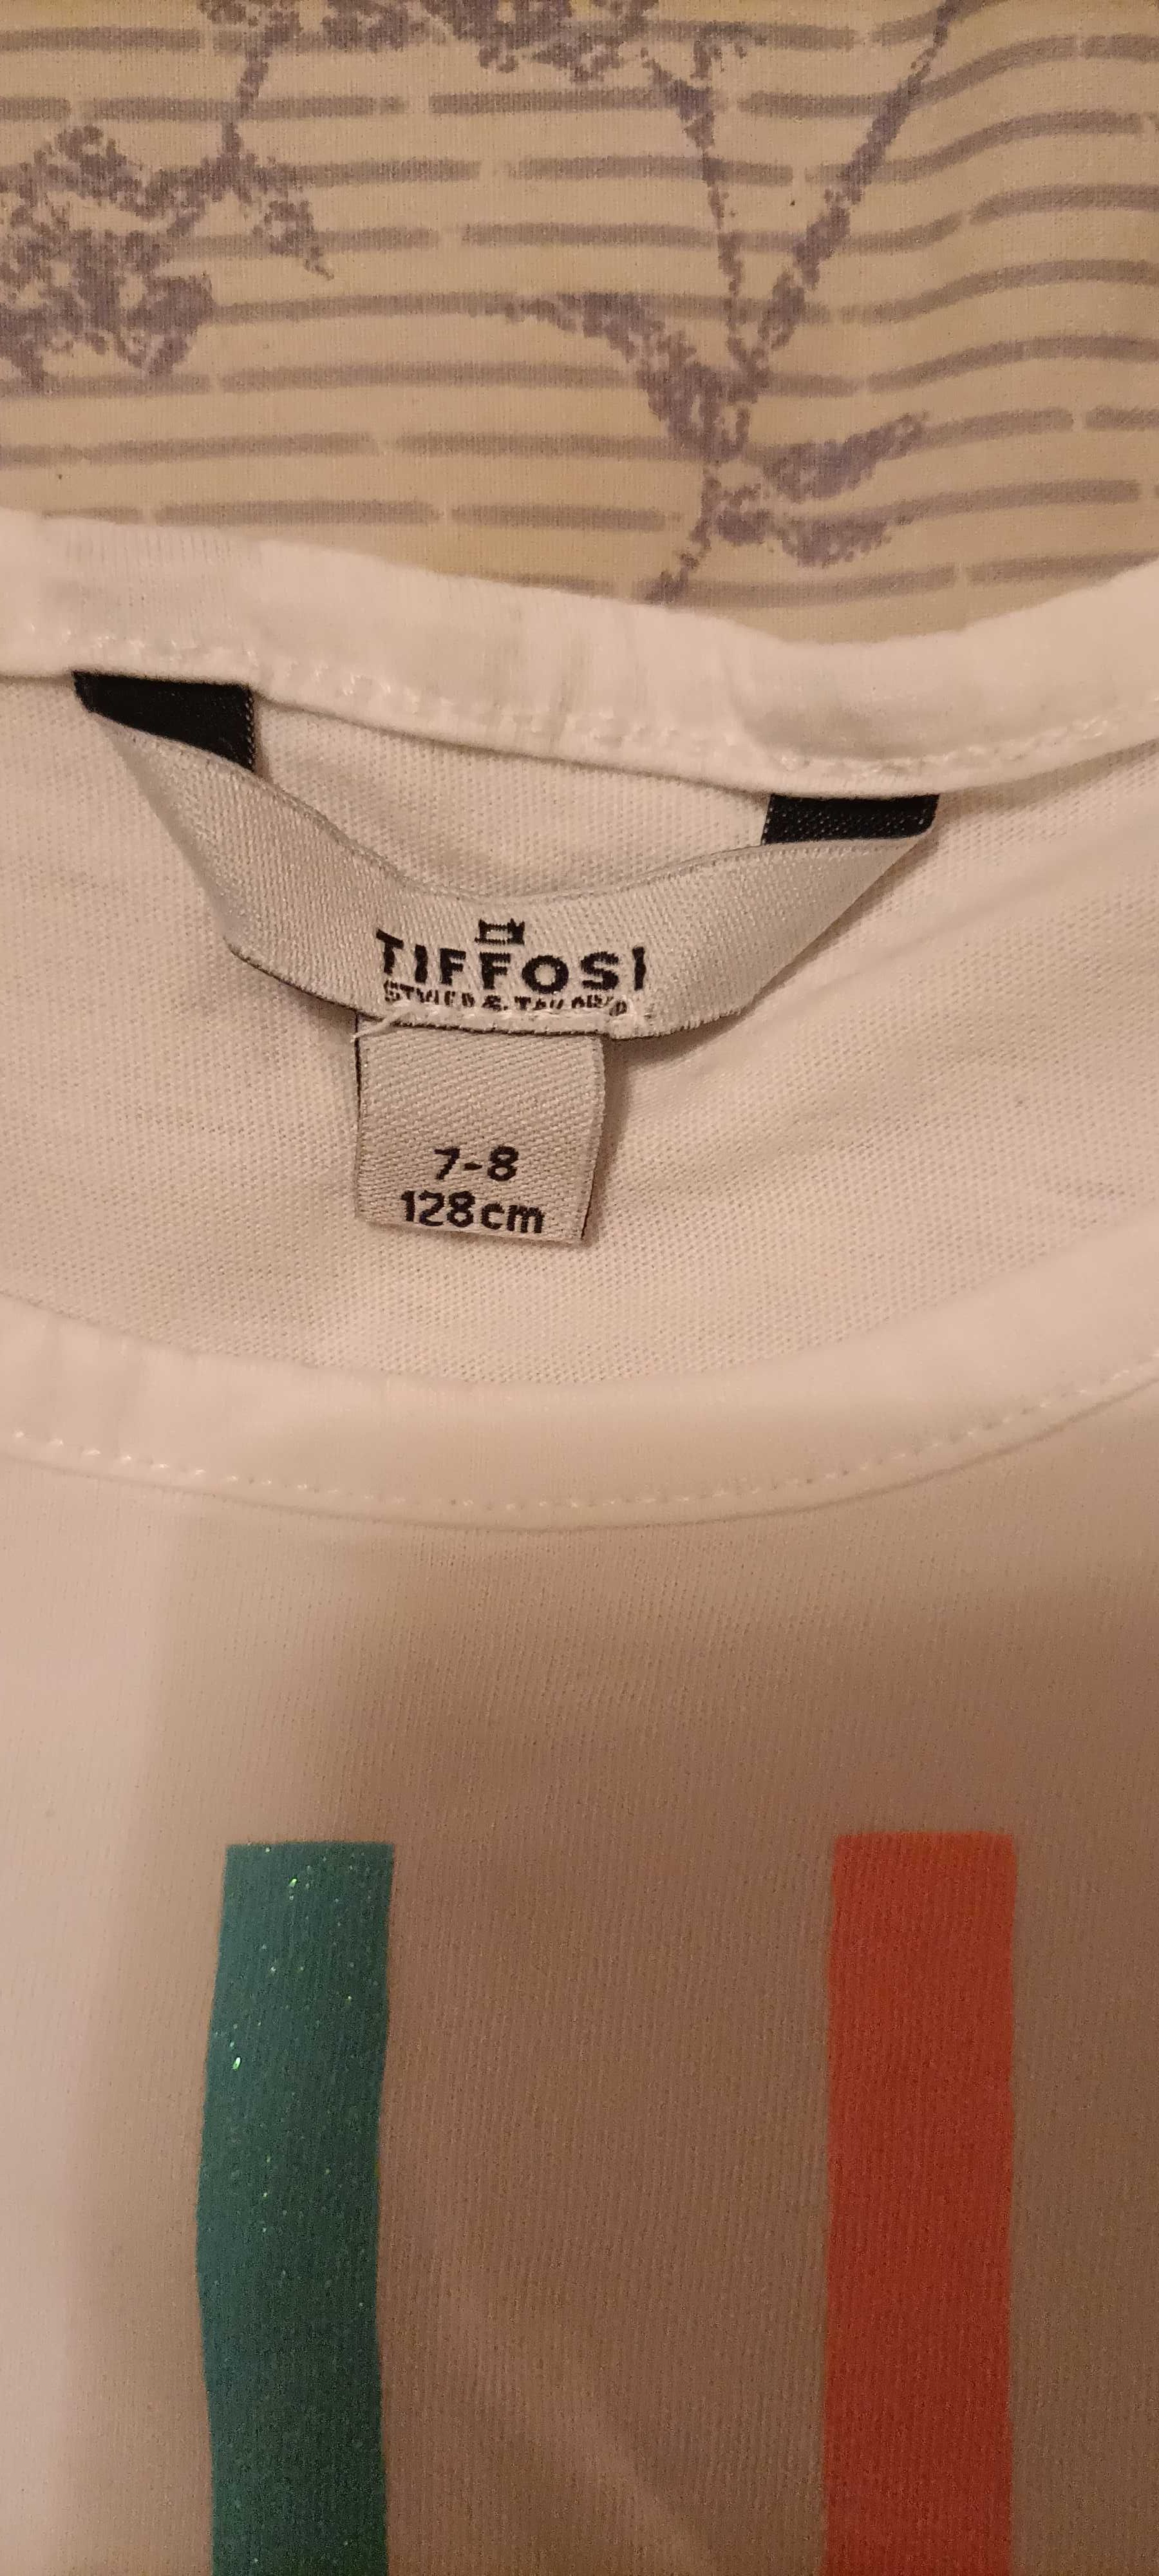 T-shirt Tiffosi 7-8 anos